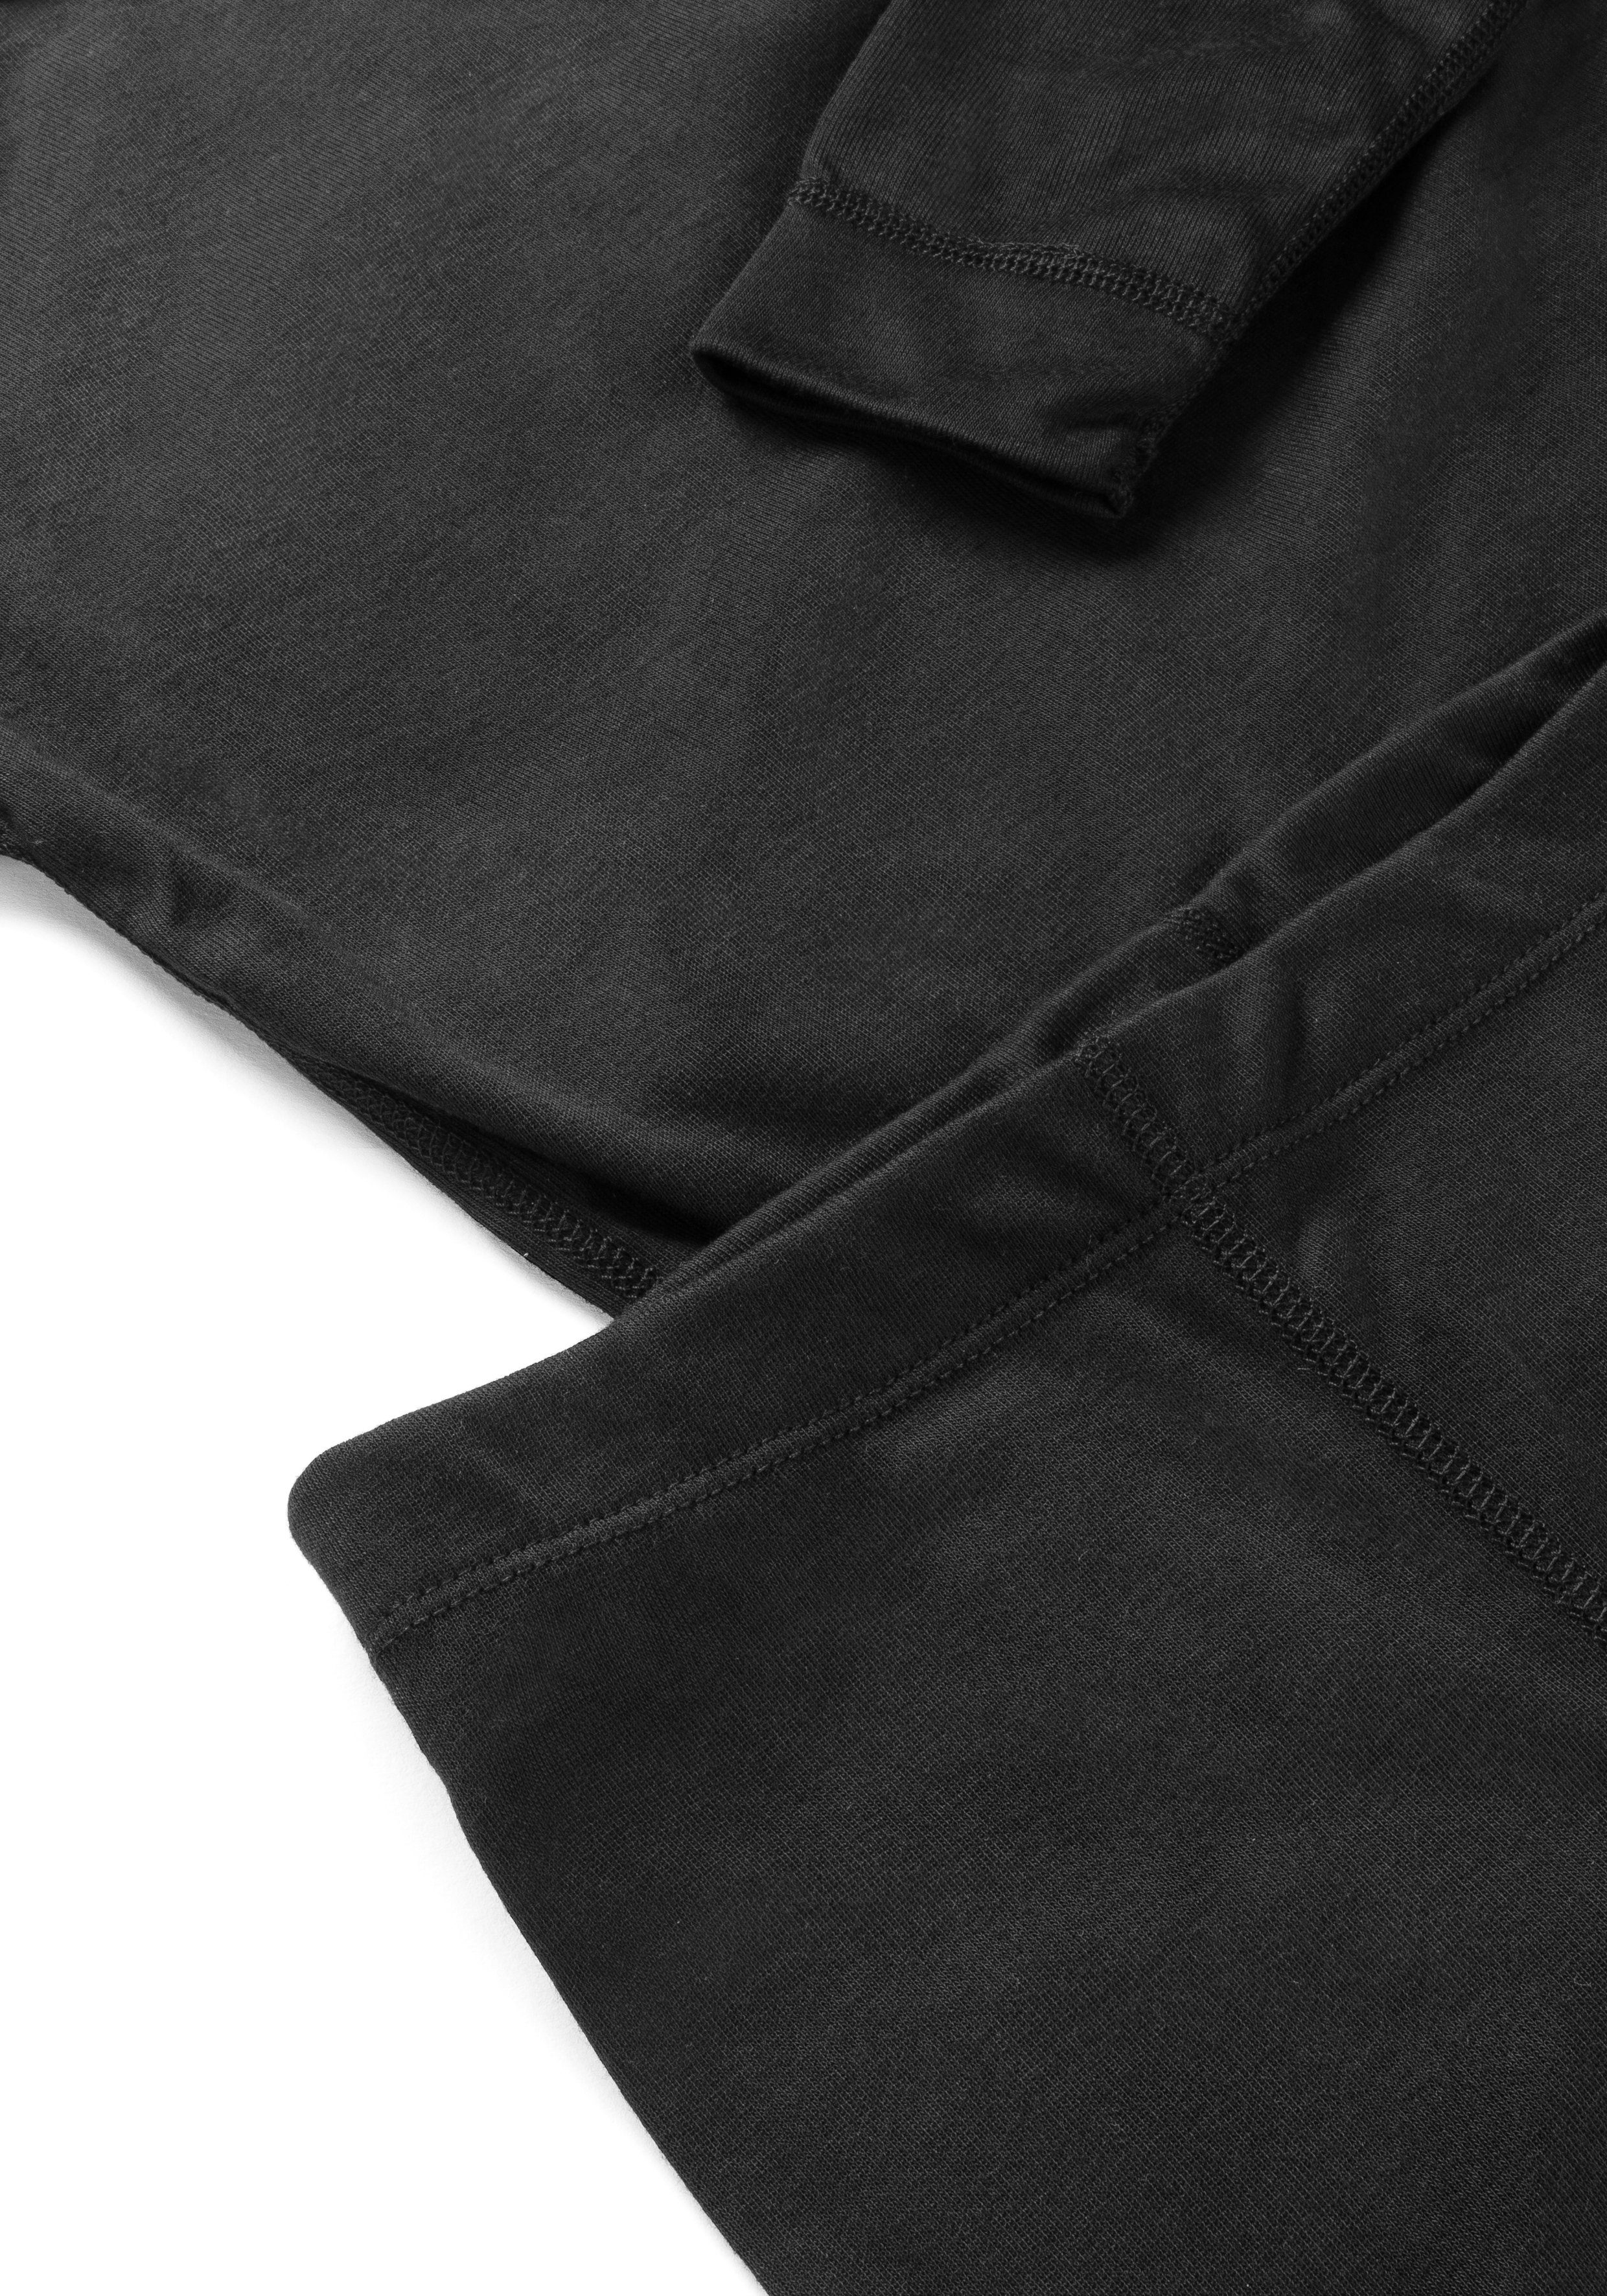 Hose Schnelltrocknende, Kim & schwarz Maier atmungsaktive Sports Shirt Funktionswäsche